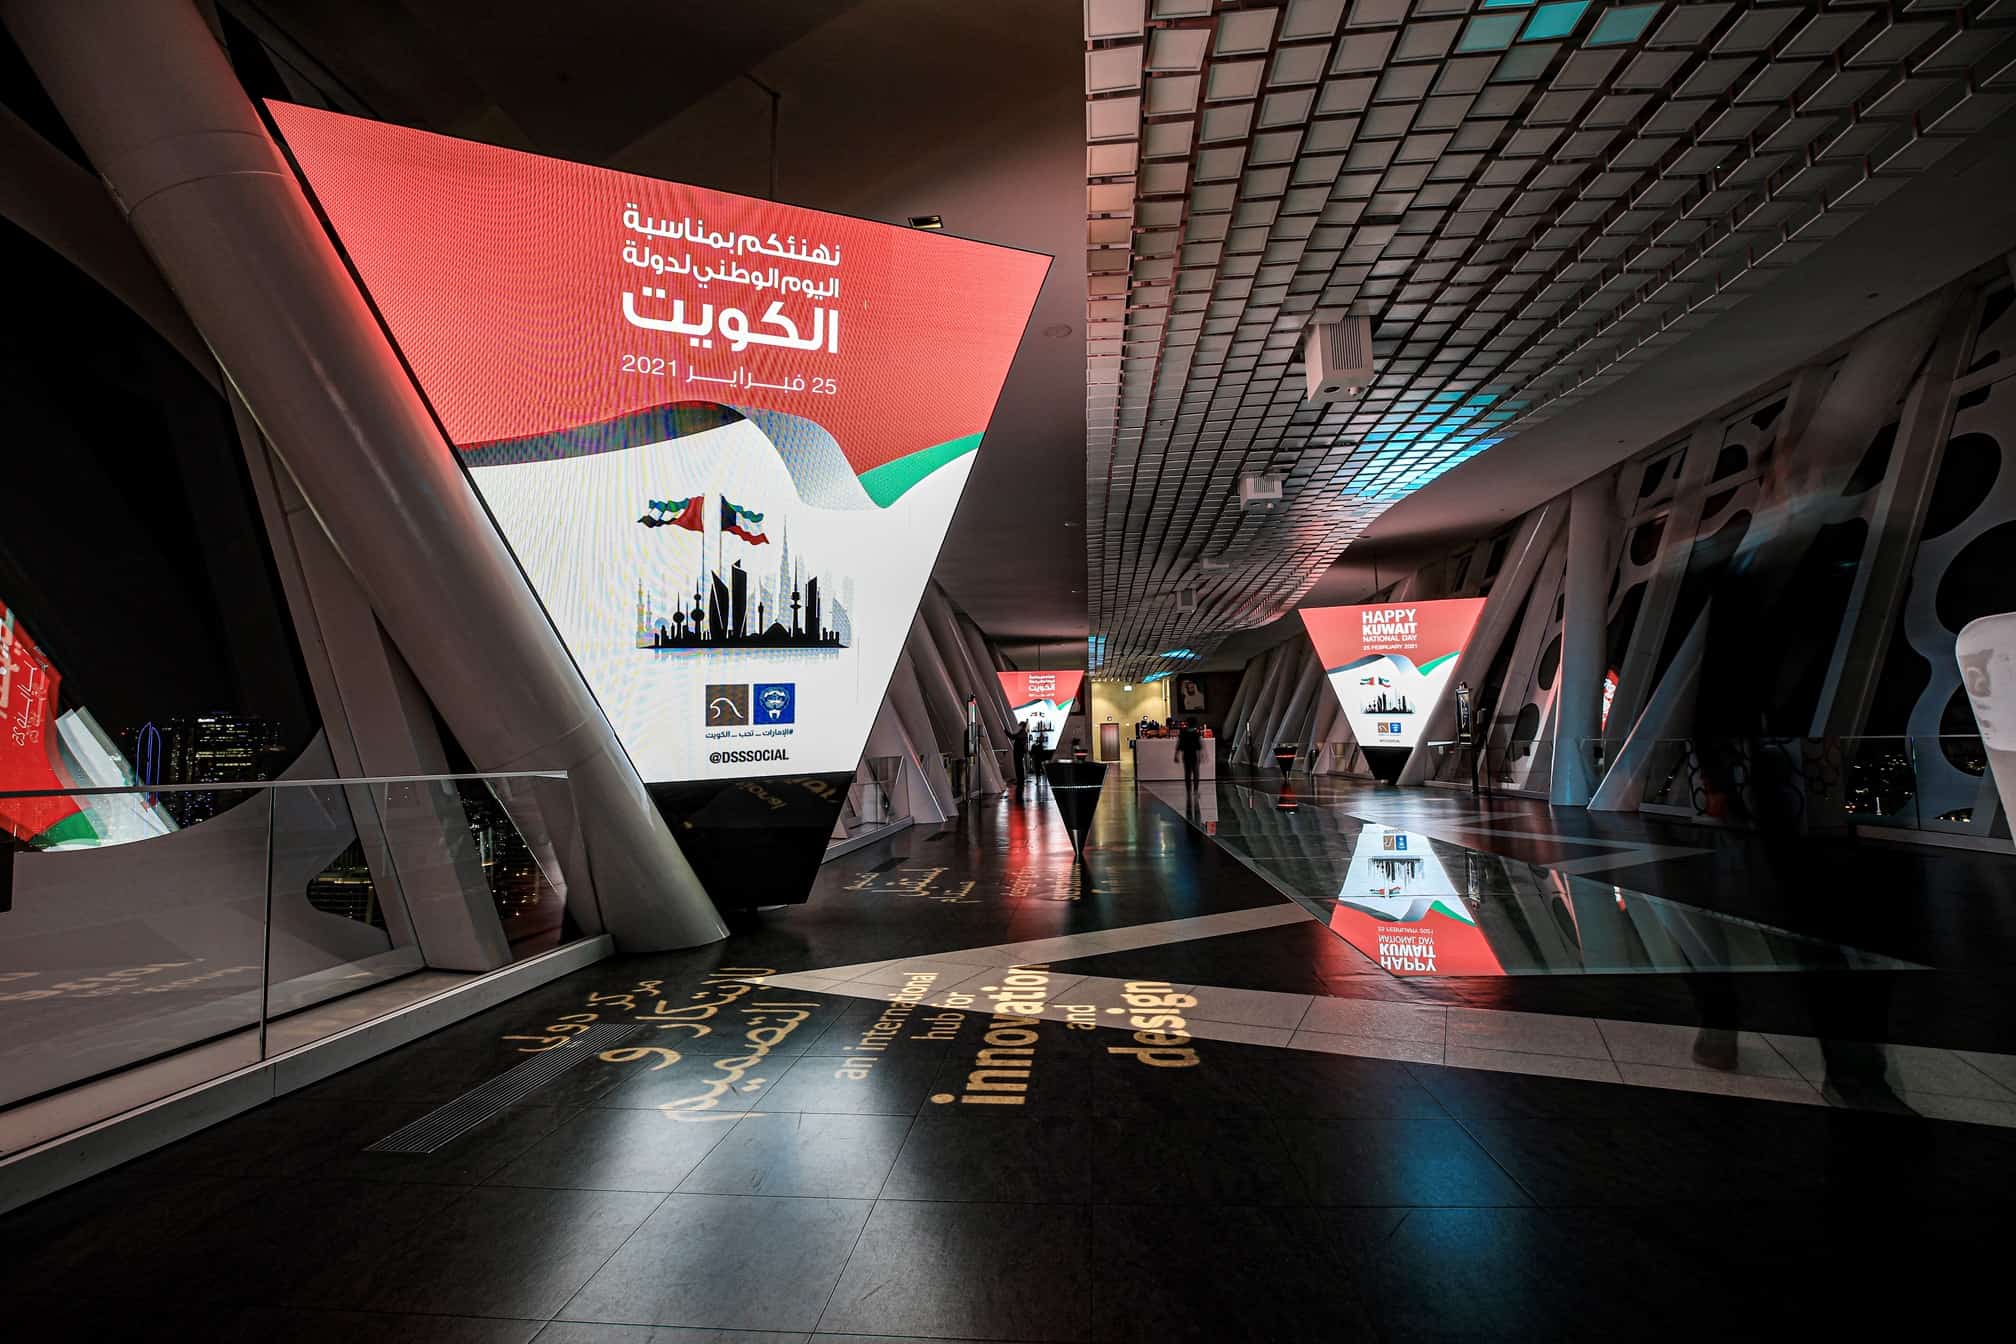 कुवैत राज्य के XNUMXवें राष्ट्रीय दिवस के उपलक्ष्य में दुबई के सबसे प्रमुख स्थलों को रोशन करना